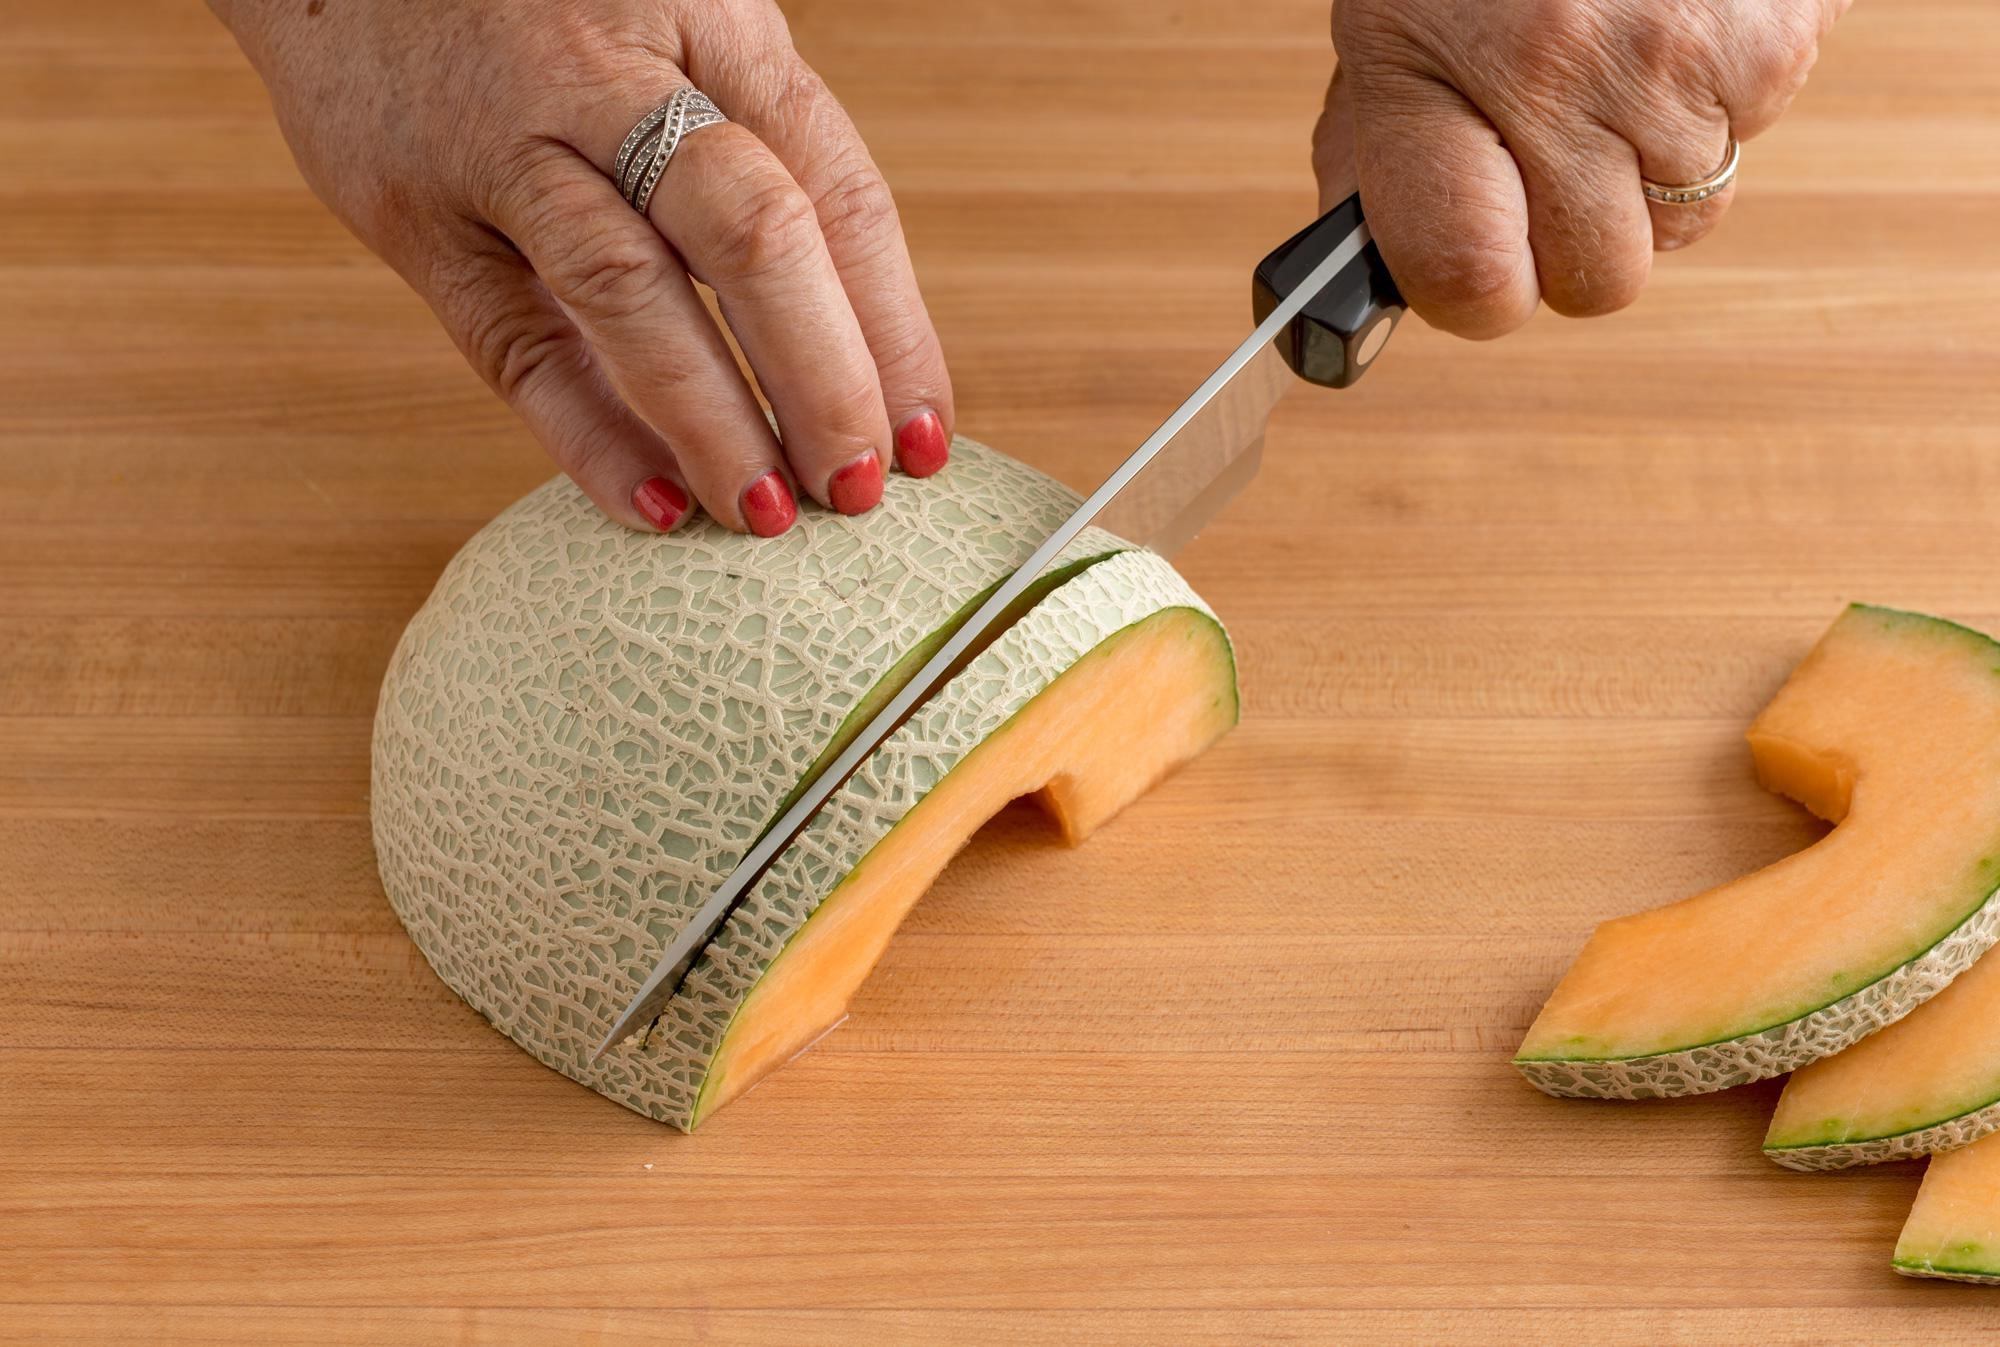 How To Cut A Cantaloupe